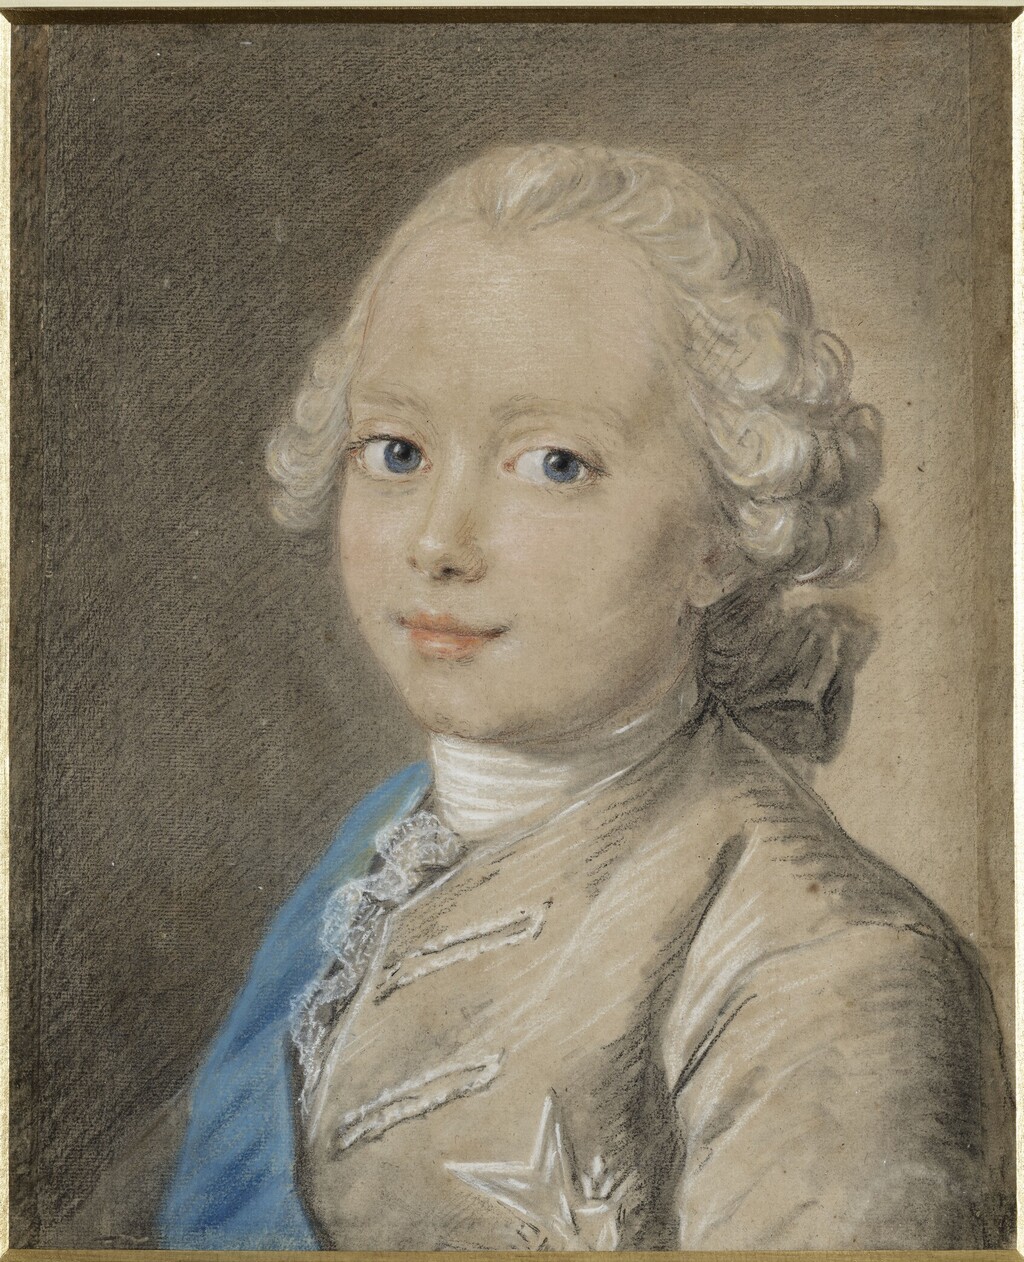  Louis-Joseph-Xavier de France (1751-1761), duc de Bourgogne, frère ainé de Louis XVI Imagep67